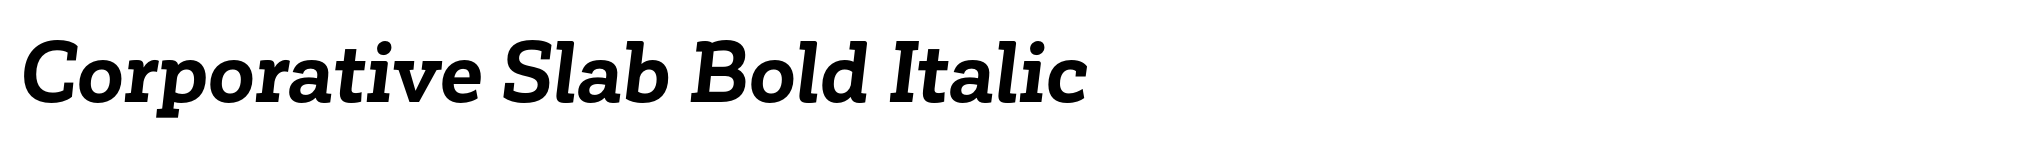 Corporative Slab Bold Italic image